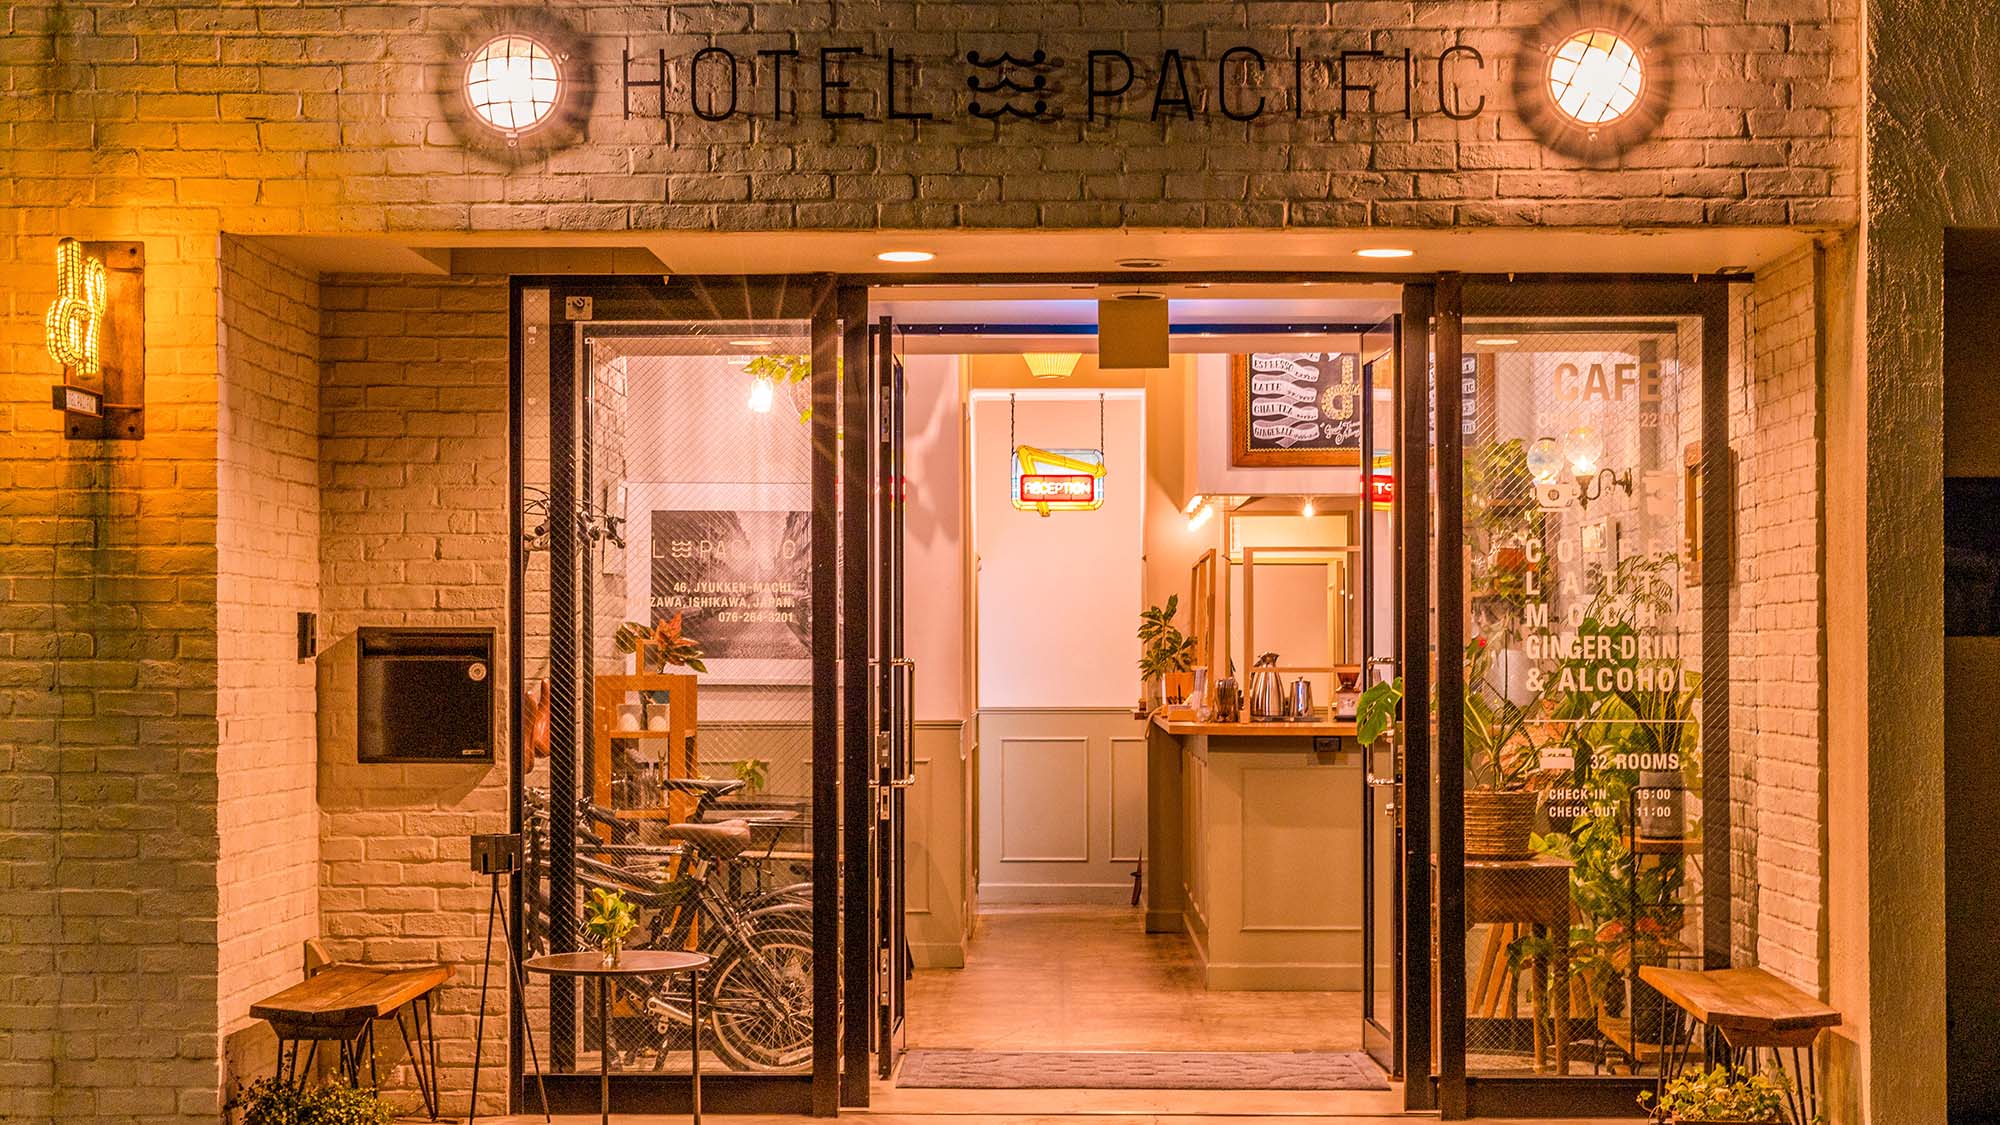 Hotel Pacific Kanazawa